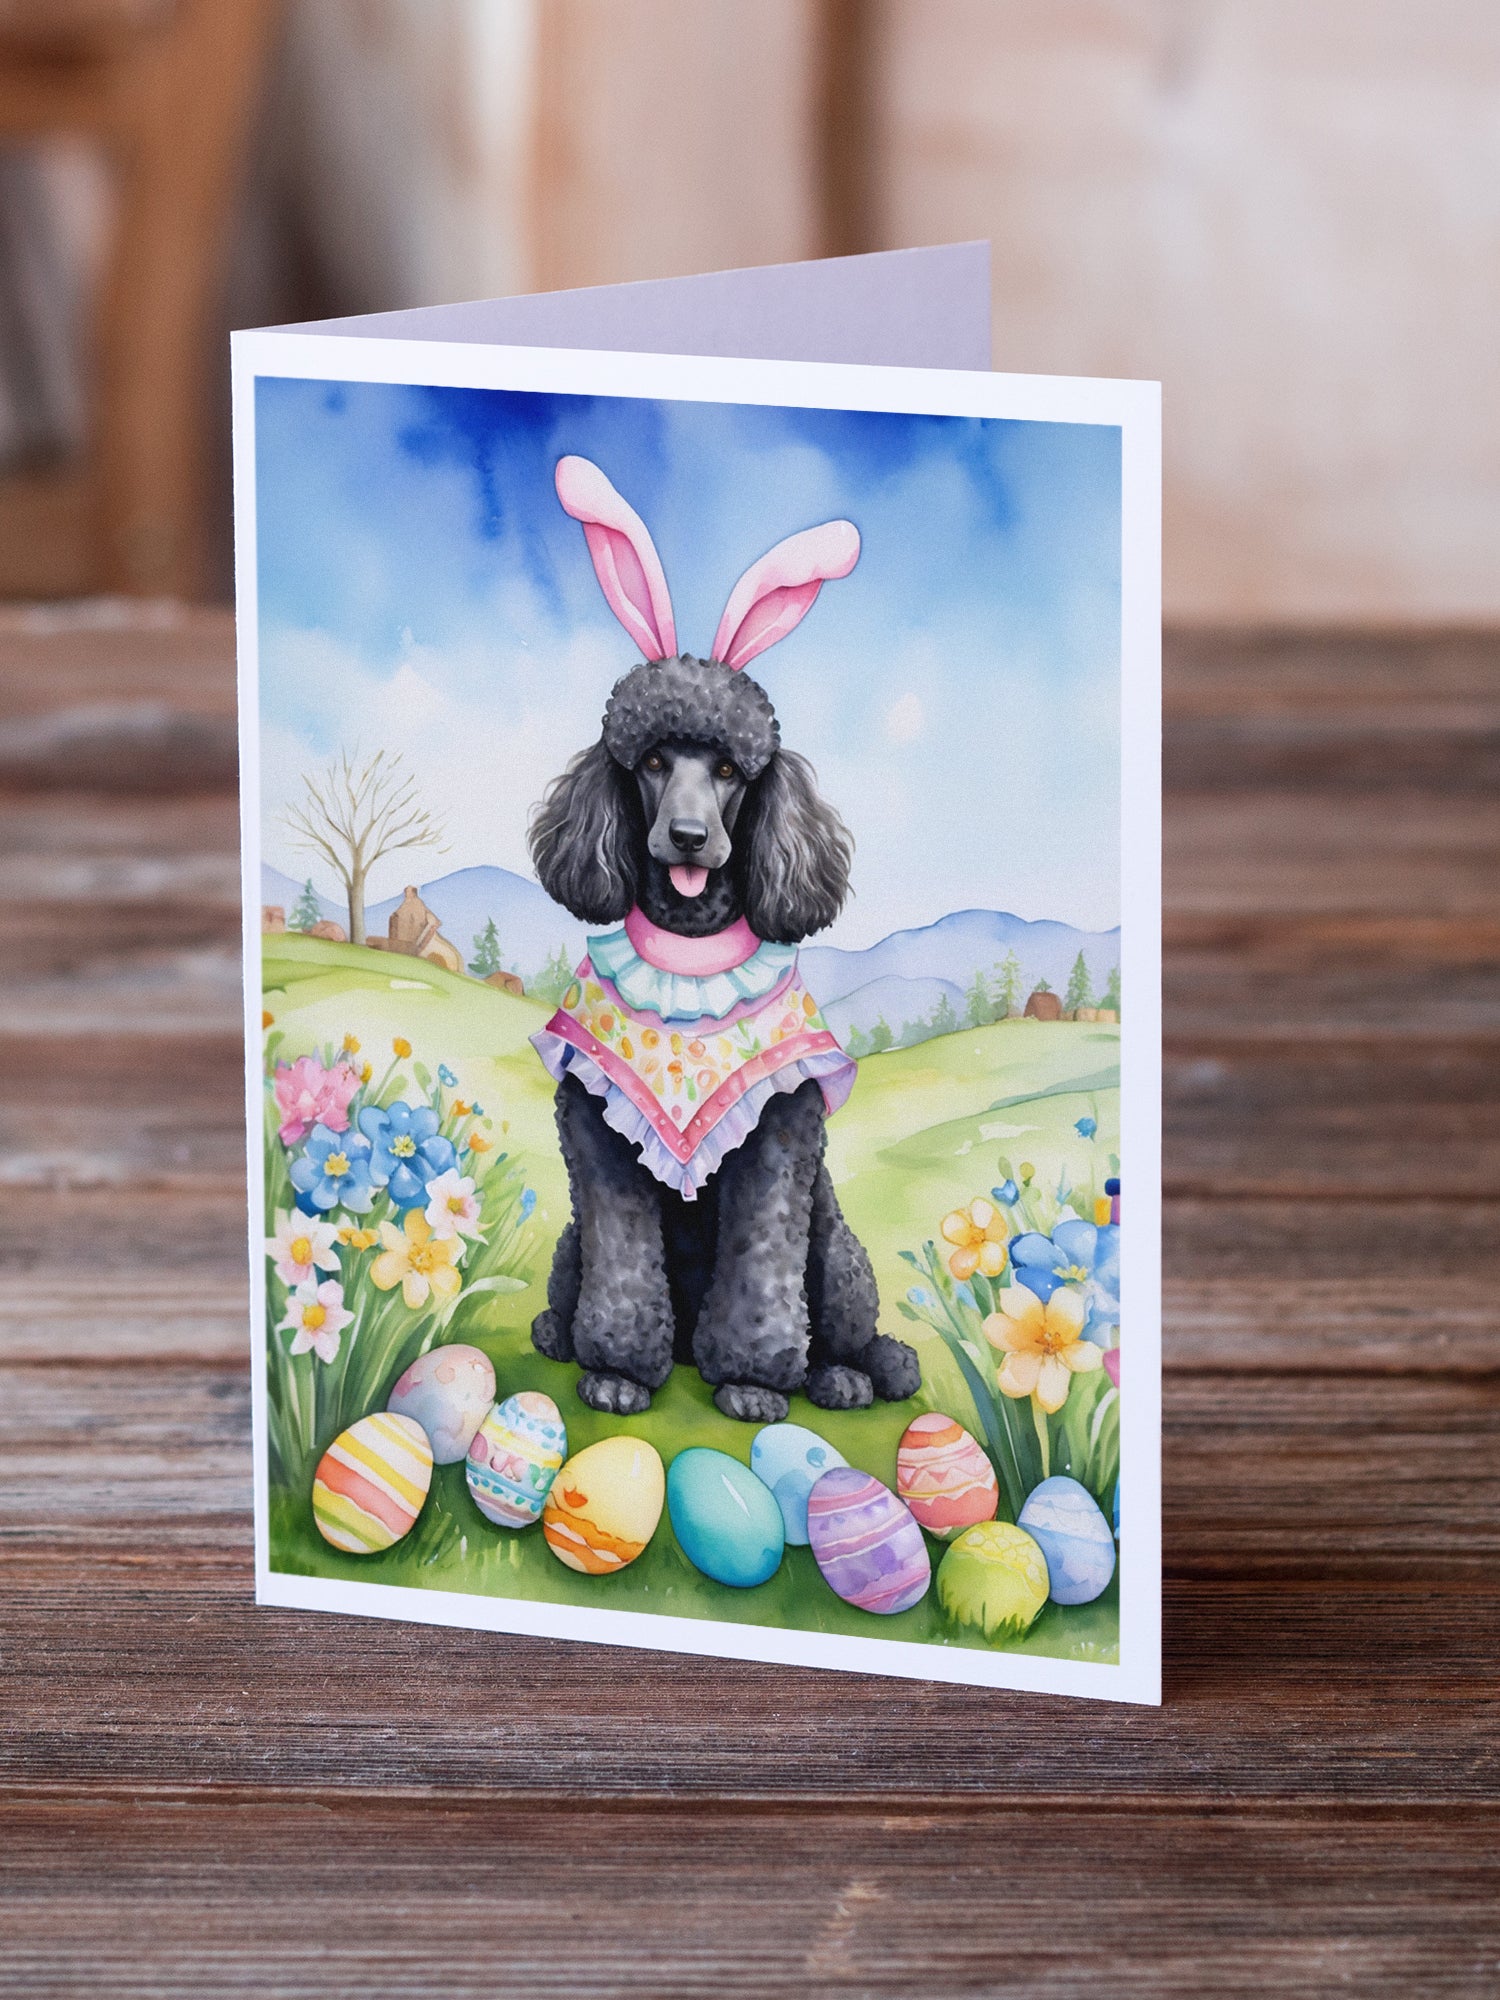 Black Poodle Easter Egg Hunt Greeting Cards Pack of 8